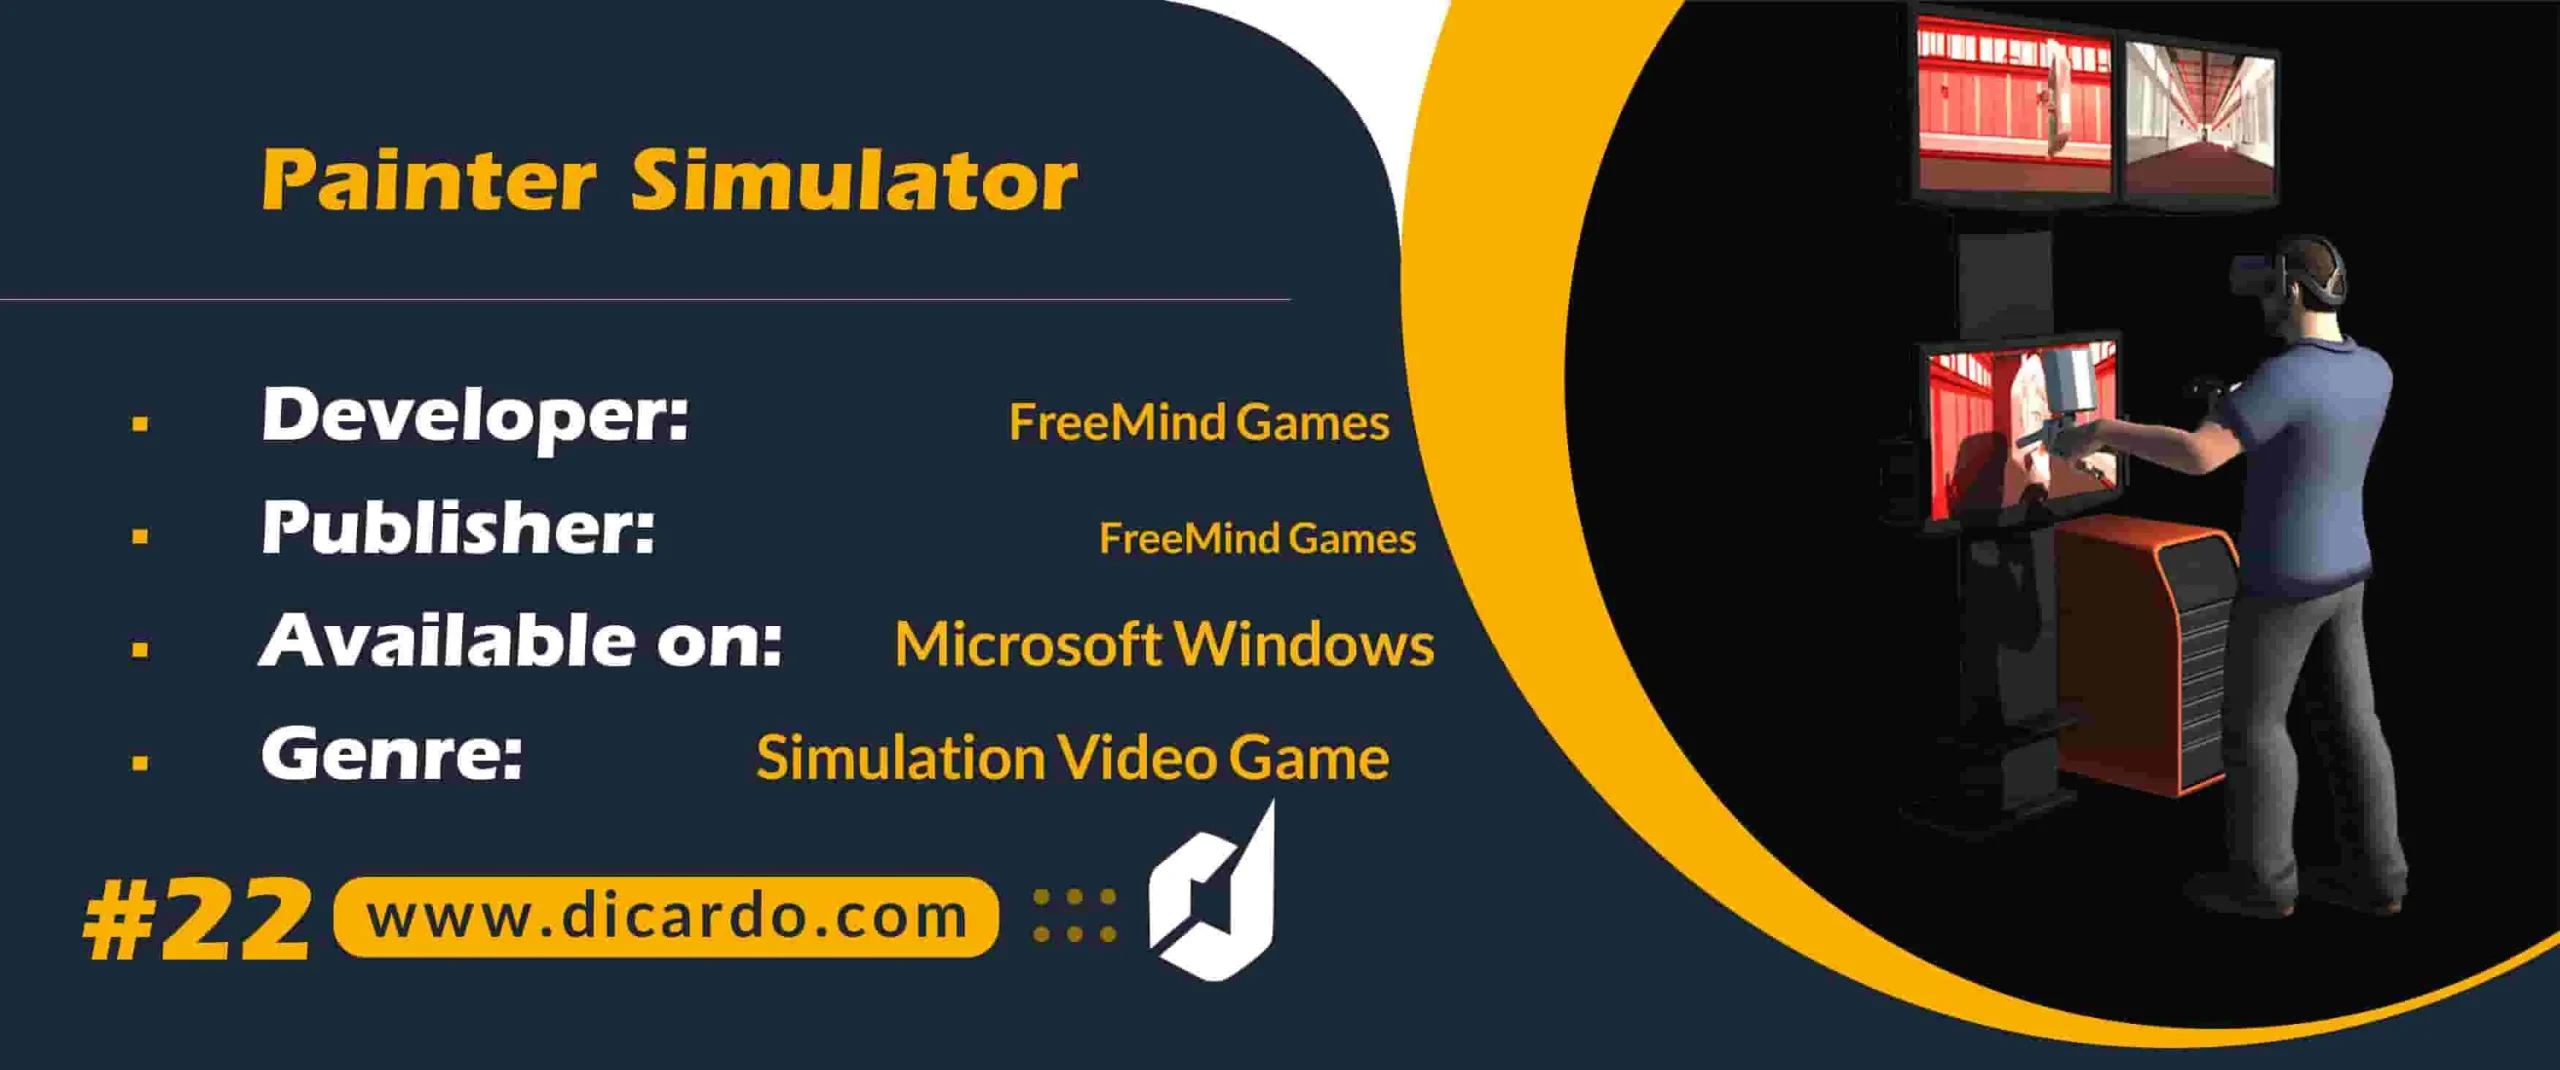 #22 پینتر سیمولیشن Painter Simulator از بازیهای PC شبیه سازی